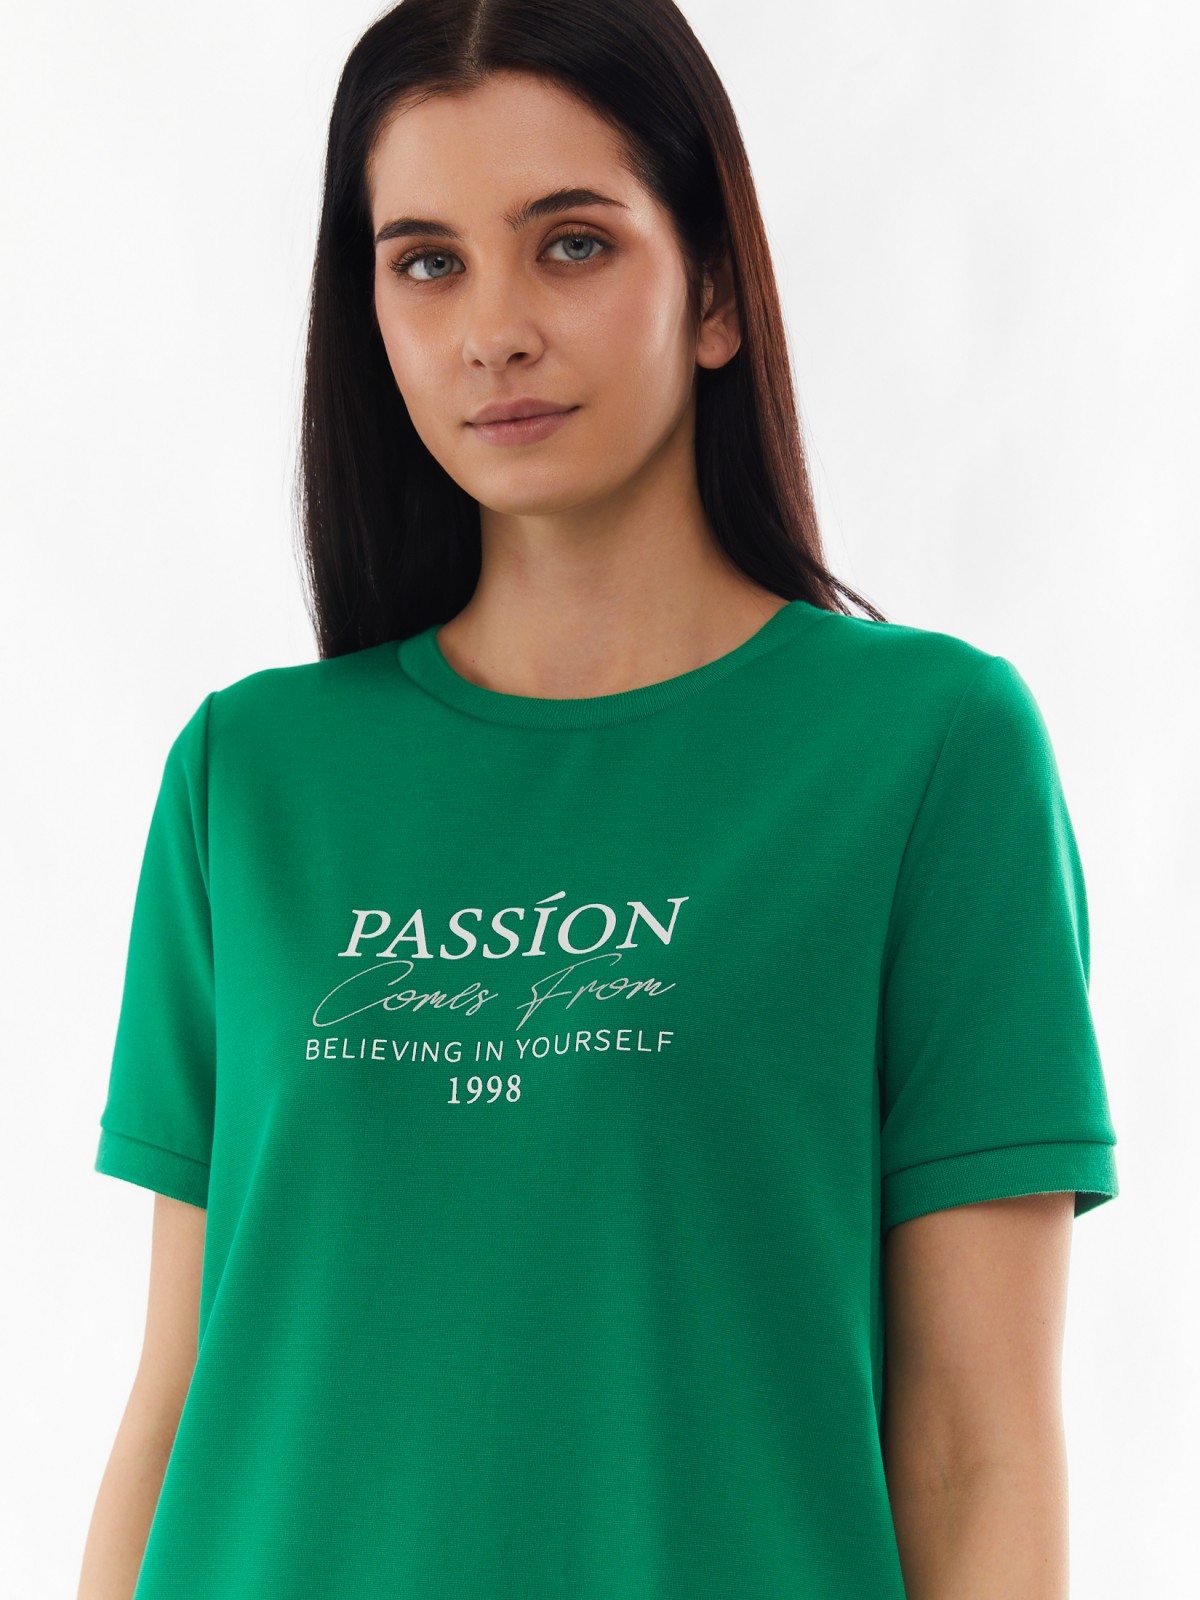 Платье-футболка с коротким рукавом и принтом-надписью zolla 024138135132, цвет зеленый, размер S - фото 4